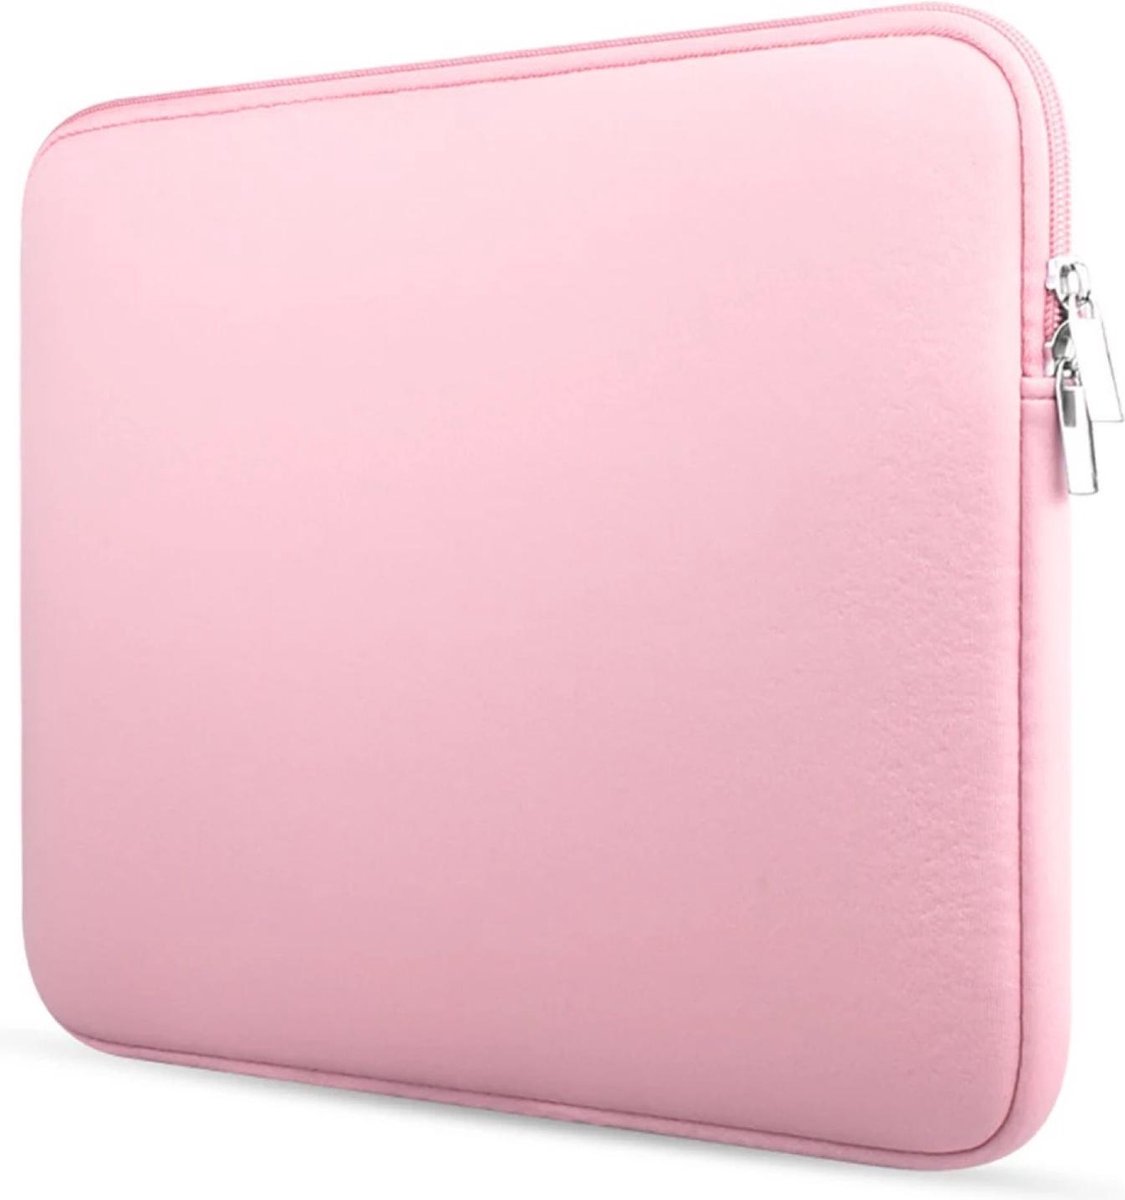 14,6 inch – laptophoes – sleeve – zeer goede kwaliteit – roze kleur - unisex - Soft Touch - spatwaterbestending